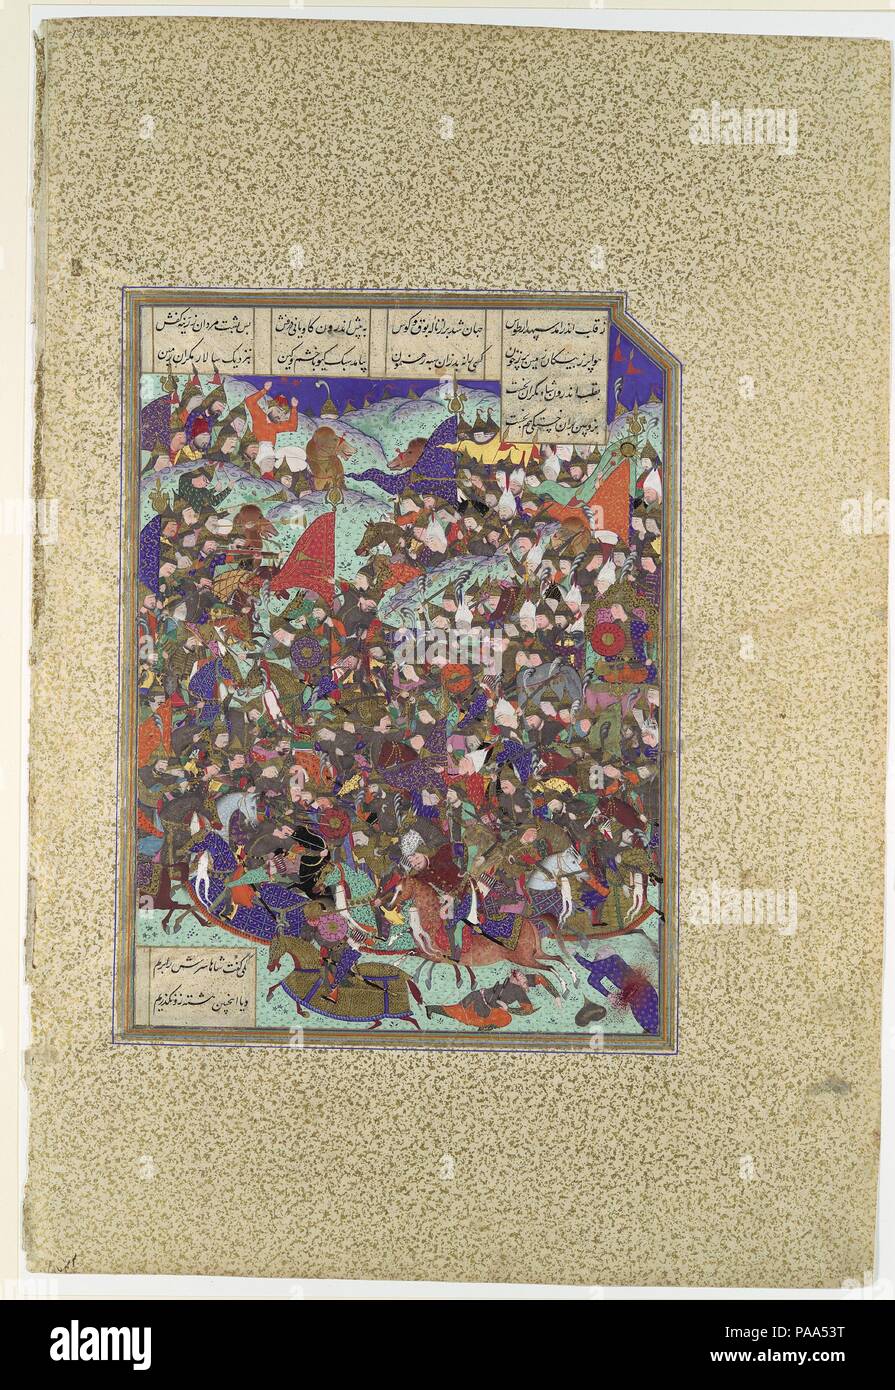 "Kai Khusrau sconfigge l'esercito di Makran', folio 376v dal Shahnama (Libro dei Re) di Shah Tahmasp. Artista: dipinto attribuito a 'Abd al-Vahhab. Autore: Abu'l Qasim Firdausi (935-1020). Dimensioni: Pittura: H. 10 9/16 x W. 7 13/16 in. (H. 26,8 x W. 19.8 cm) intera pagina: H. 18 5/8 x W. 12 11/16 in. (H. 47,3 x W. 32.2 cm). Data: ca. 1525-30. Afrasiyab dell ex alleati lo rifiuta, così egli è costretto a viaggiare a Gangdizh, una città costruita da Siyavush sul mare di Chin, attraverso il deserto di Mukran. Kai Khusrau manda ambasciatori al re locale per chiedere disposizioni e passaggio sicuro, ma lo scià di Foto Stock